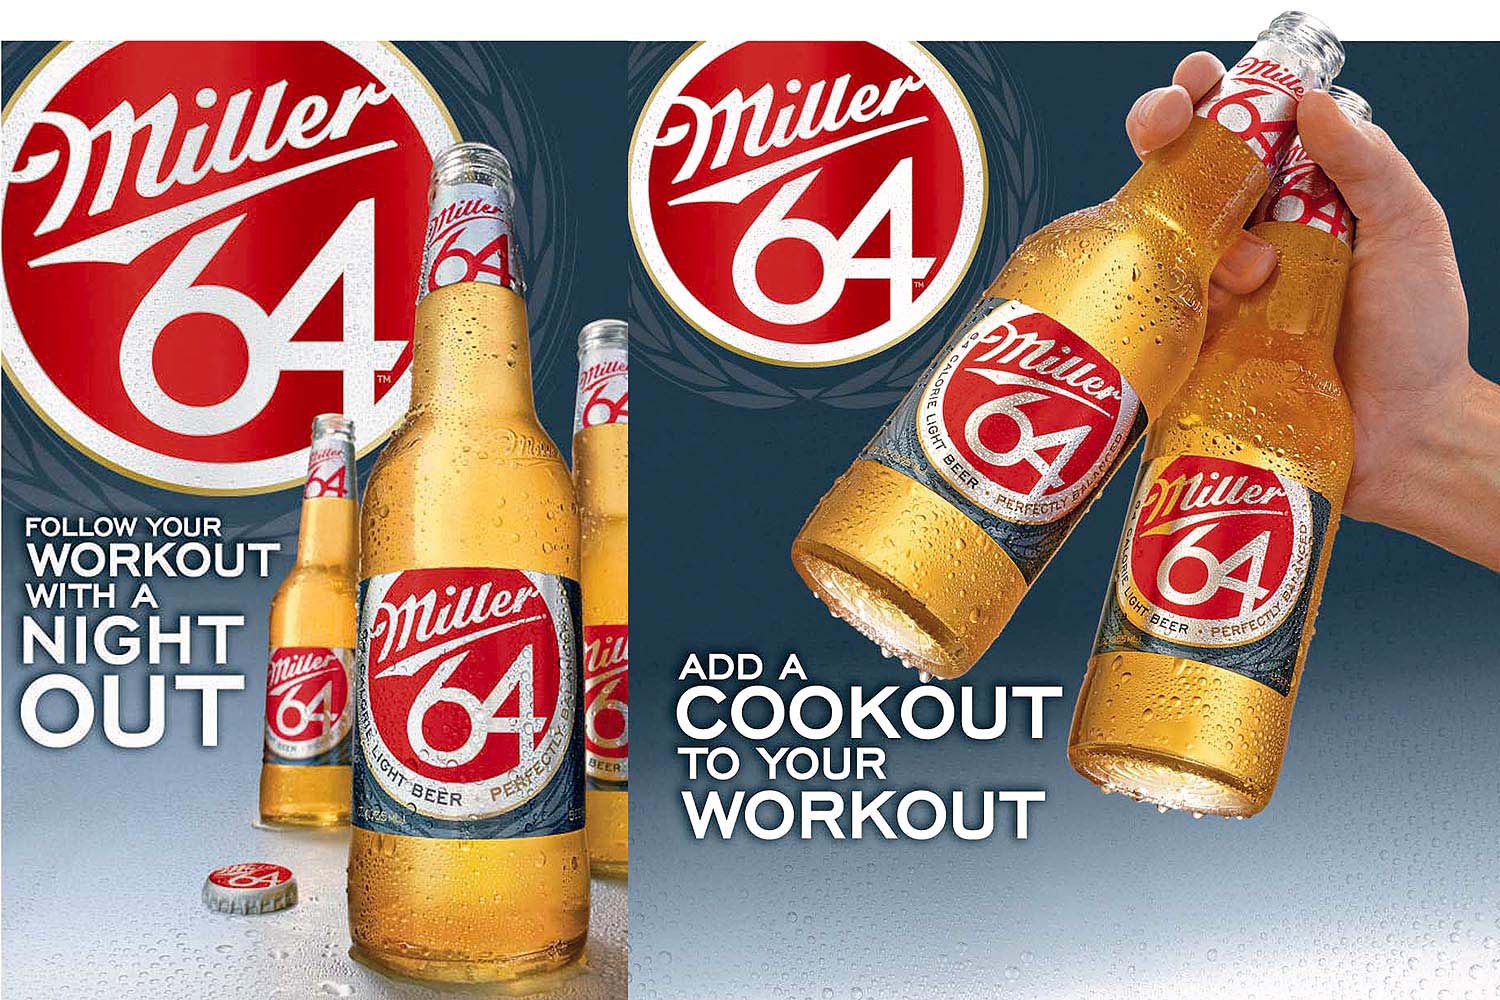 Miller 64 Beer.jpg